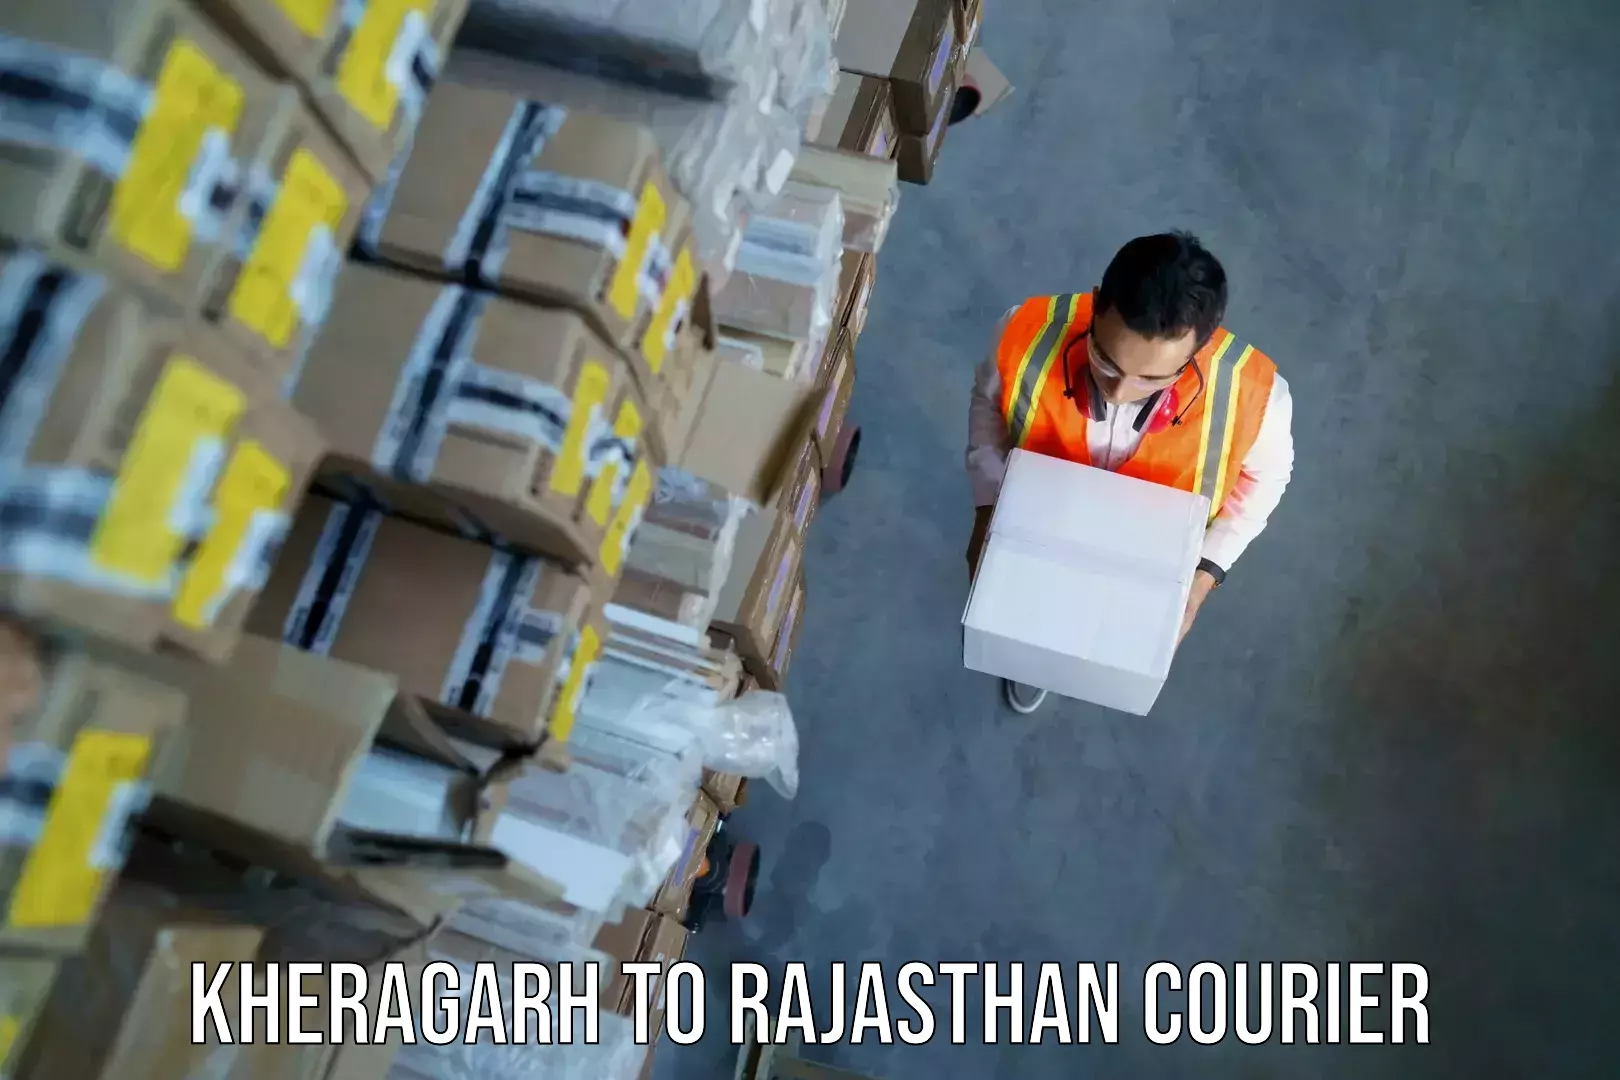 Baggage shipping advice Kheragarh to Hindaun